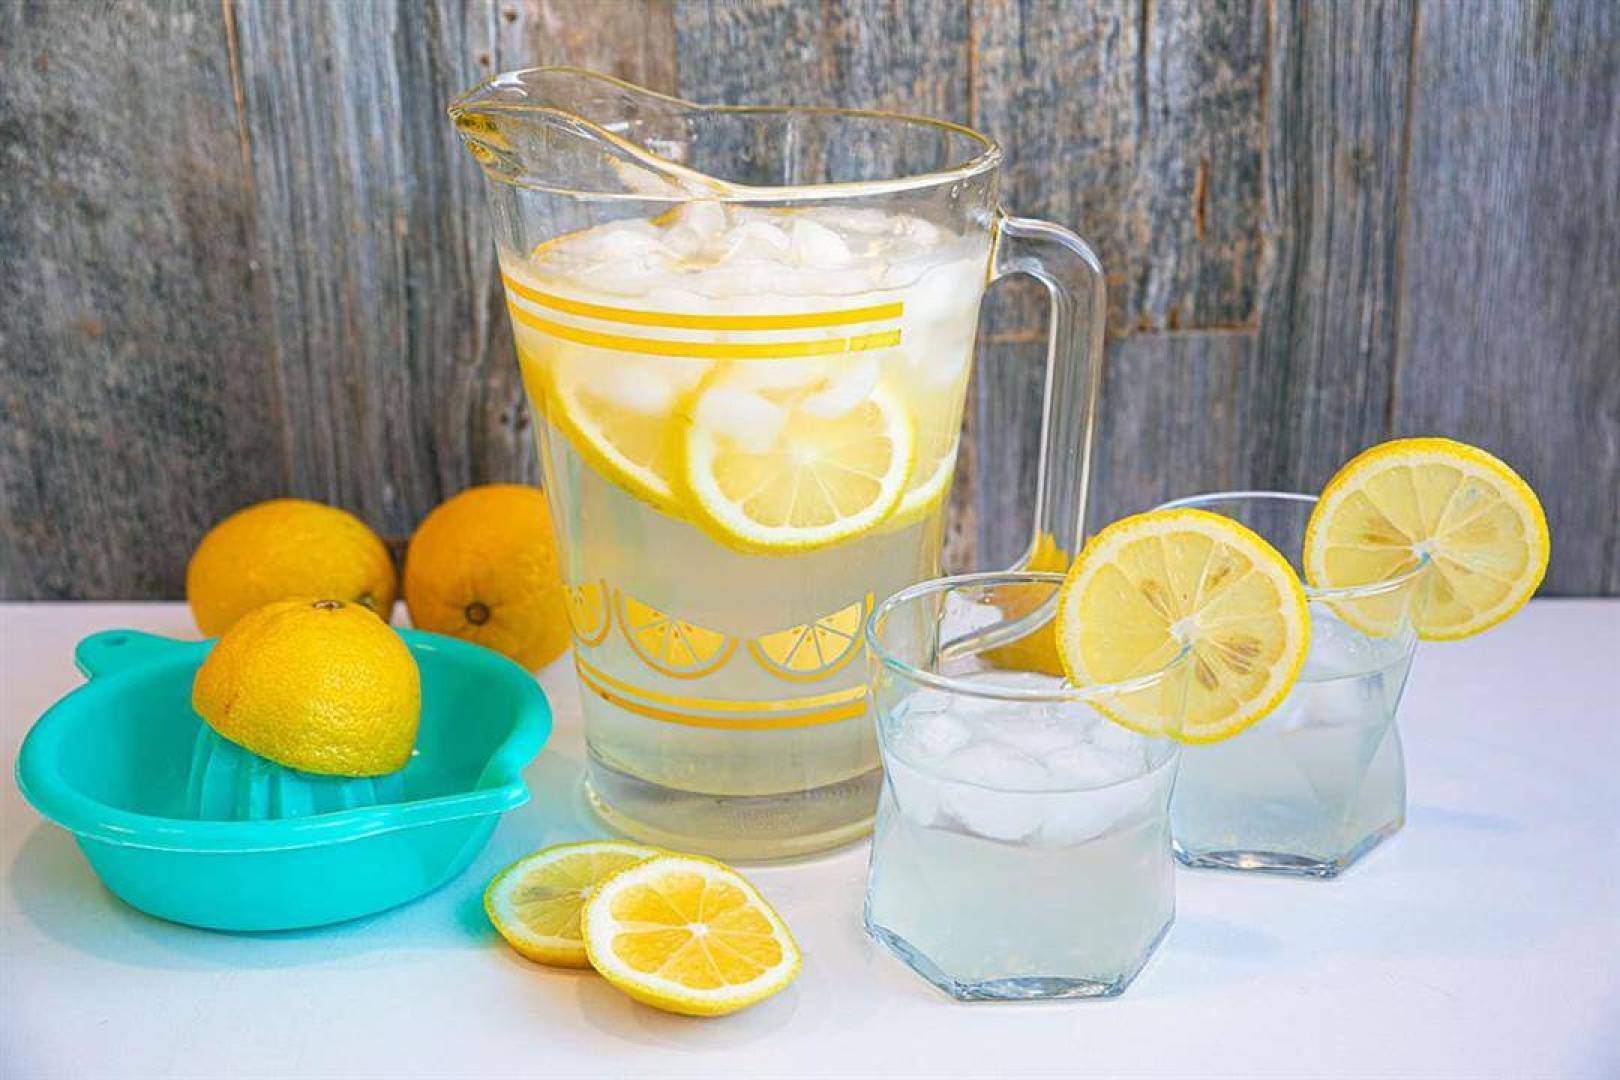 ماء الليمون بديل صحي منعش يساعدك في إنقاص وزنك .. إليك التفاصيل